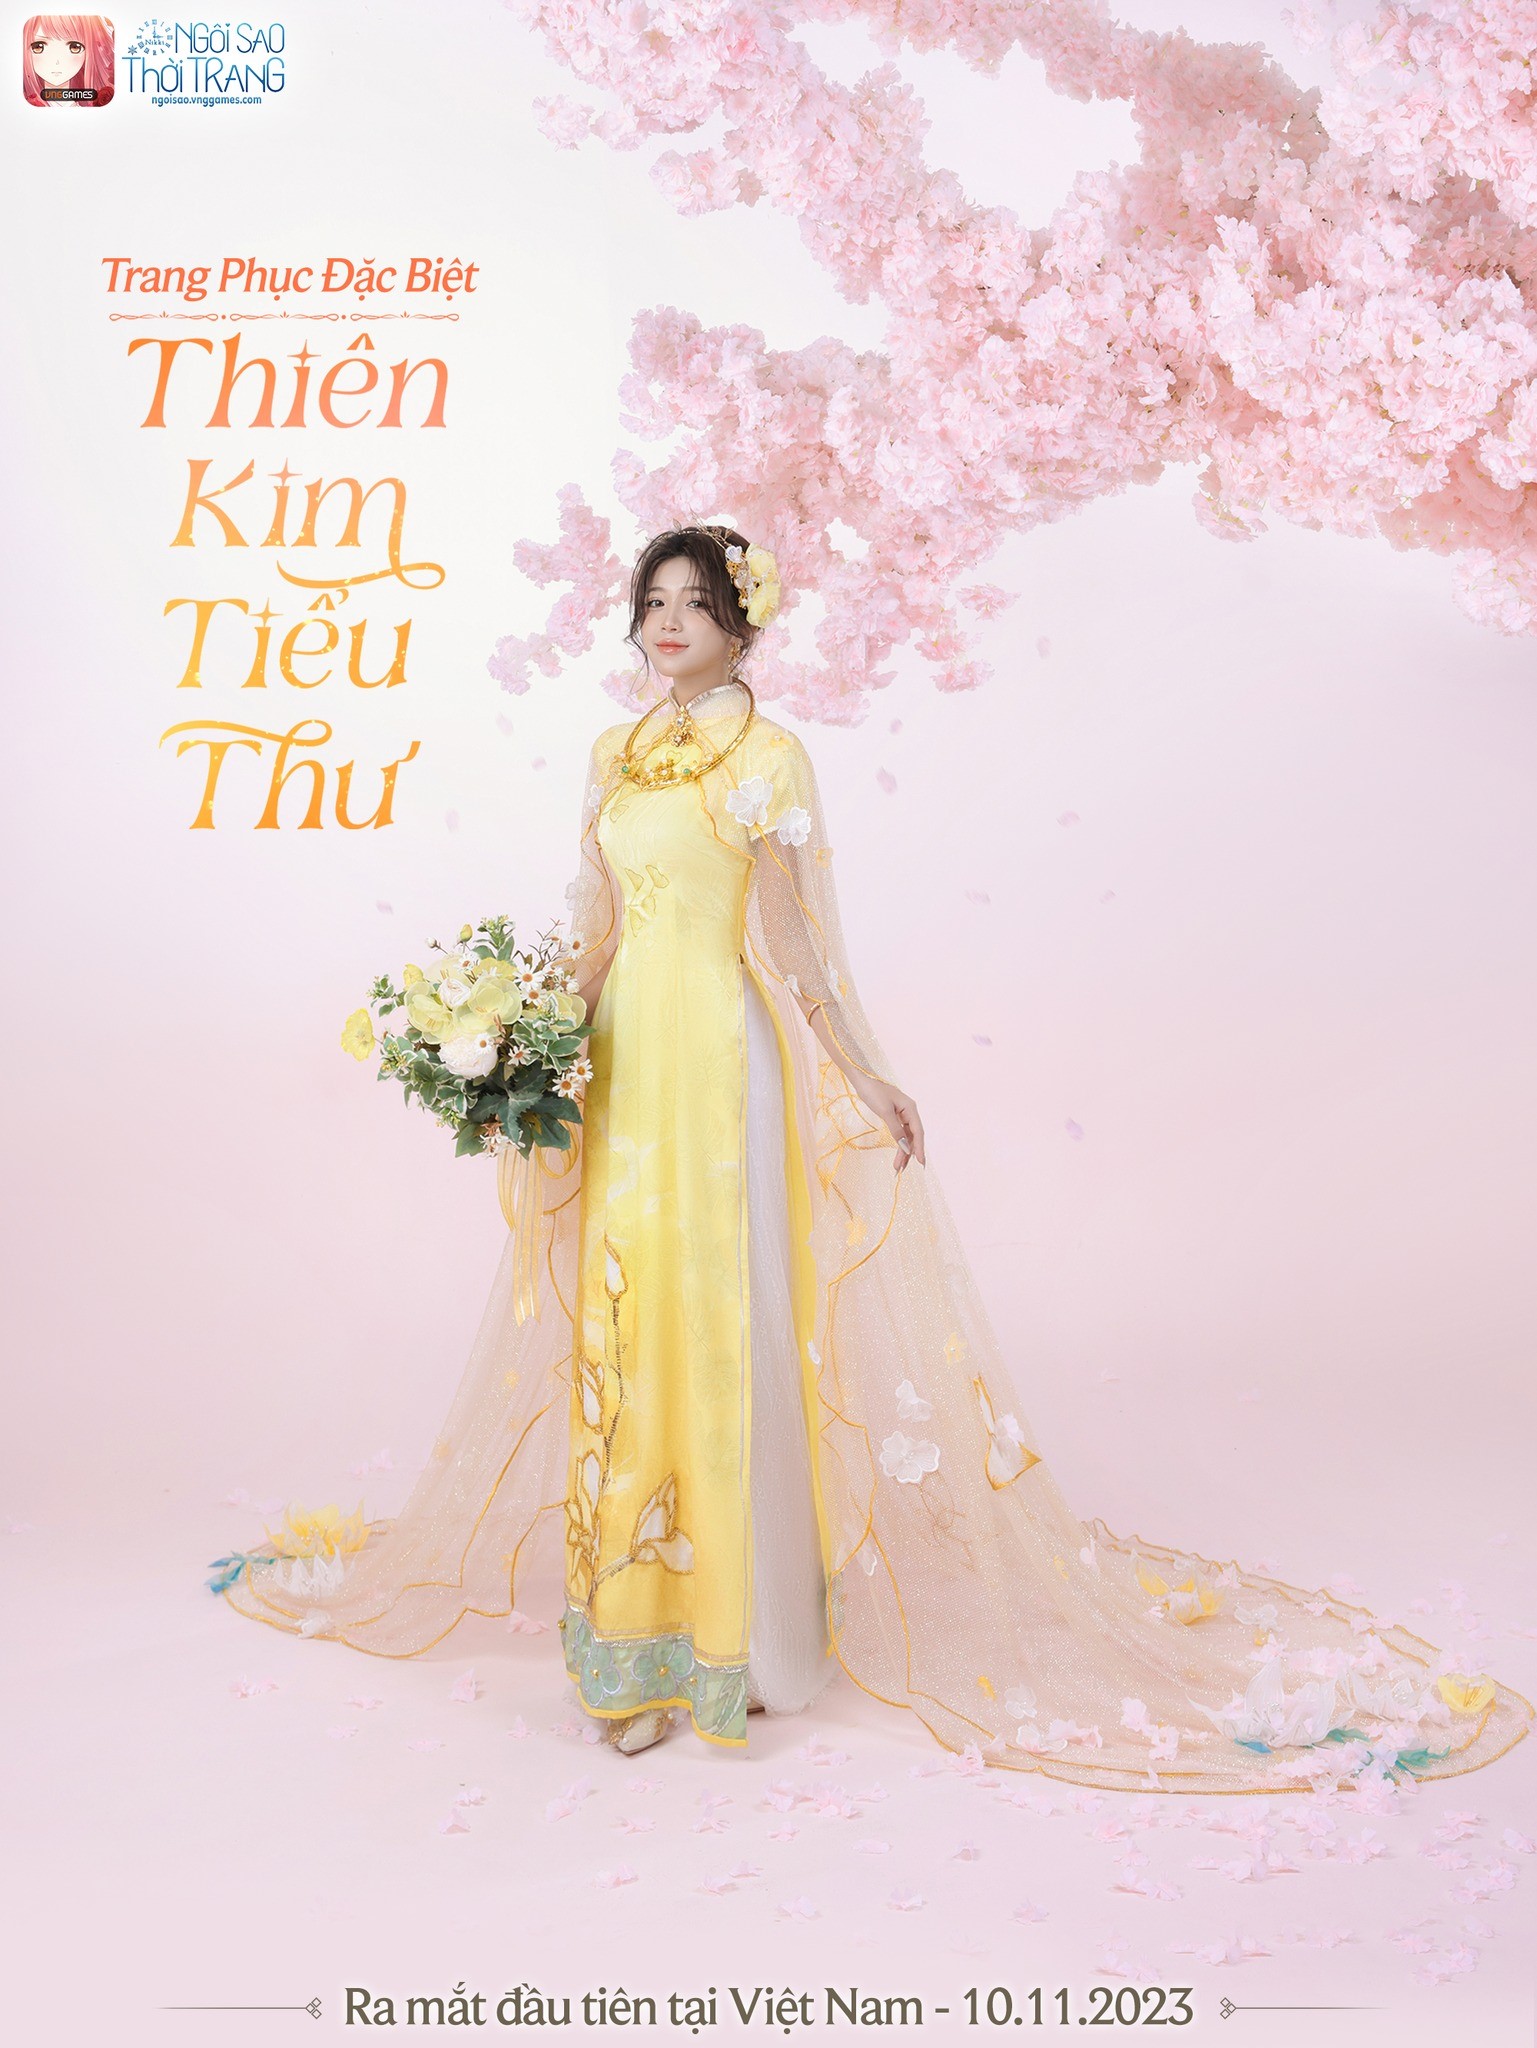 Ngôi Sao Thời Trang VNG - Miracle Nikki ra mắt trang phục đặc biệt dành riêng cho thị trường Việt Nam sau 3 năm - ảnh 3